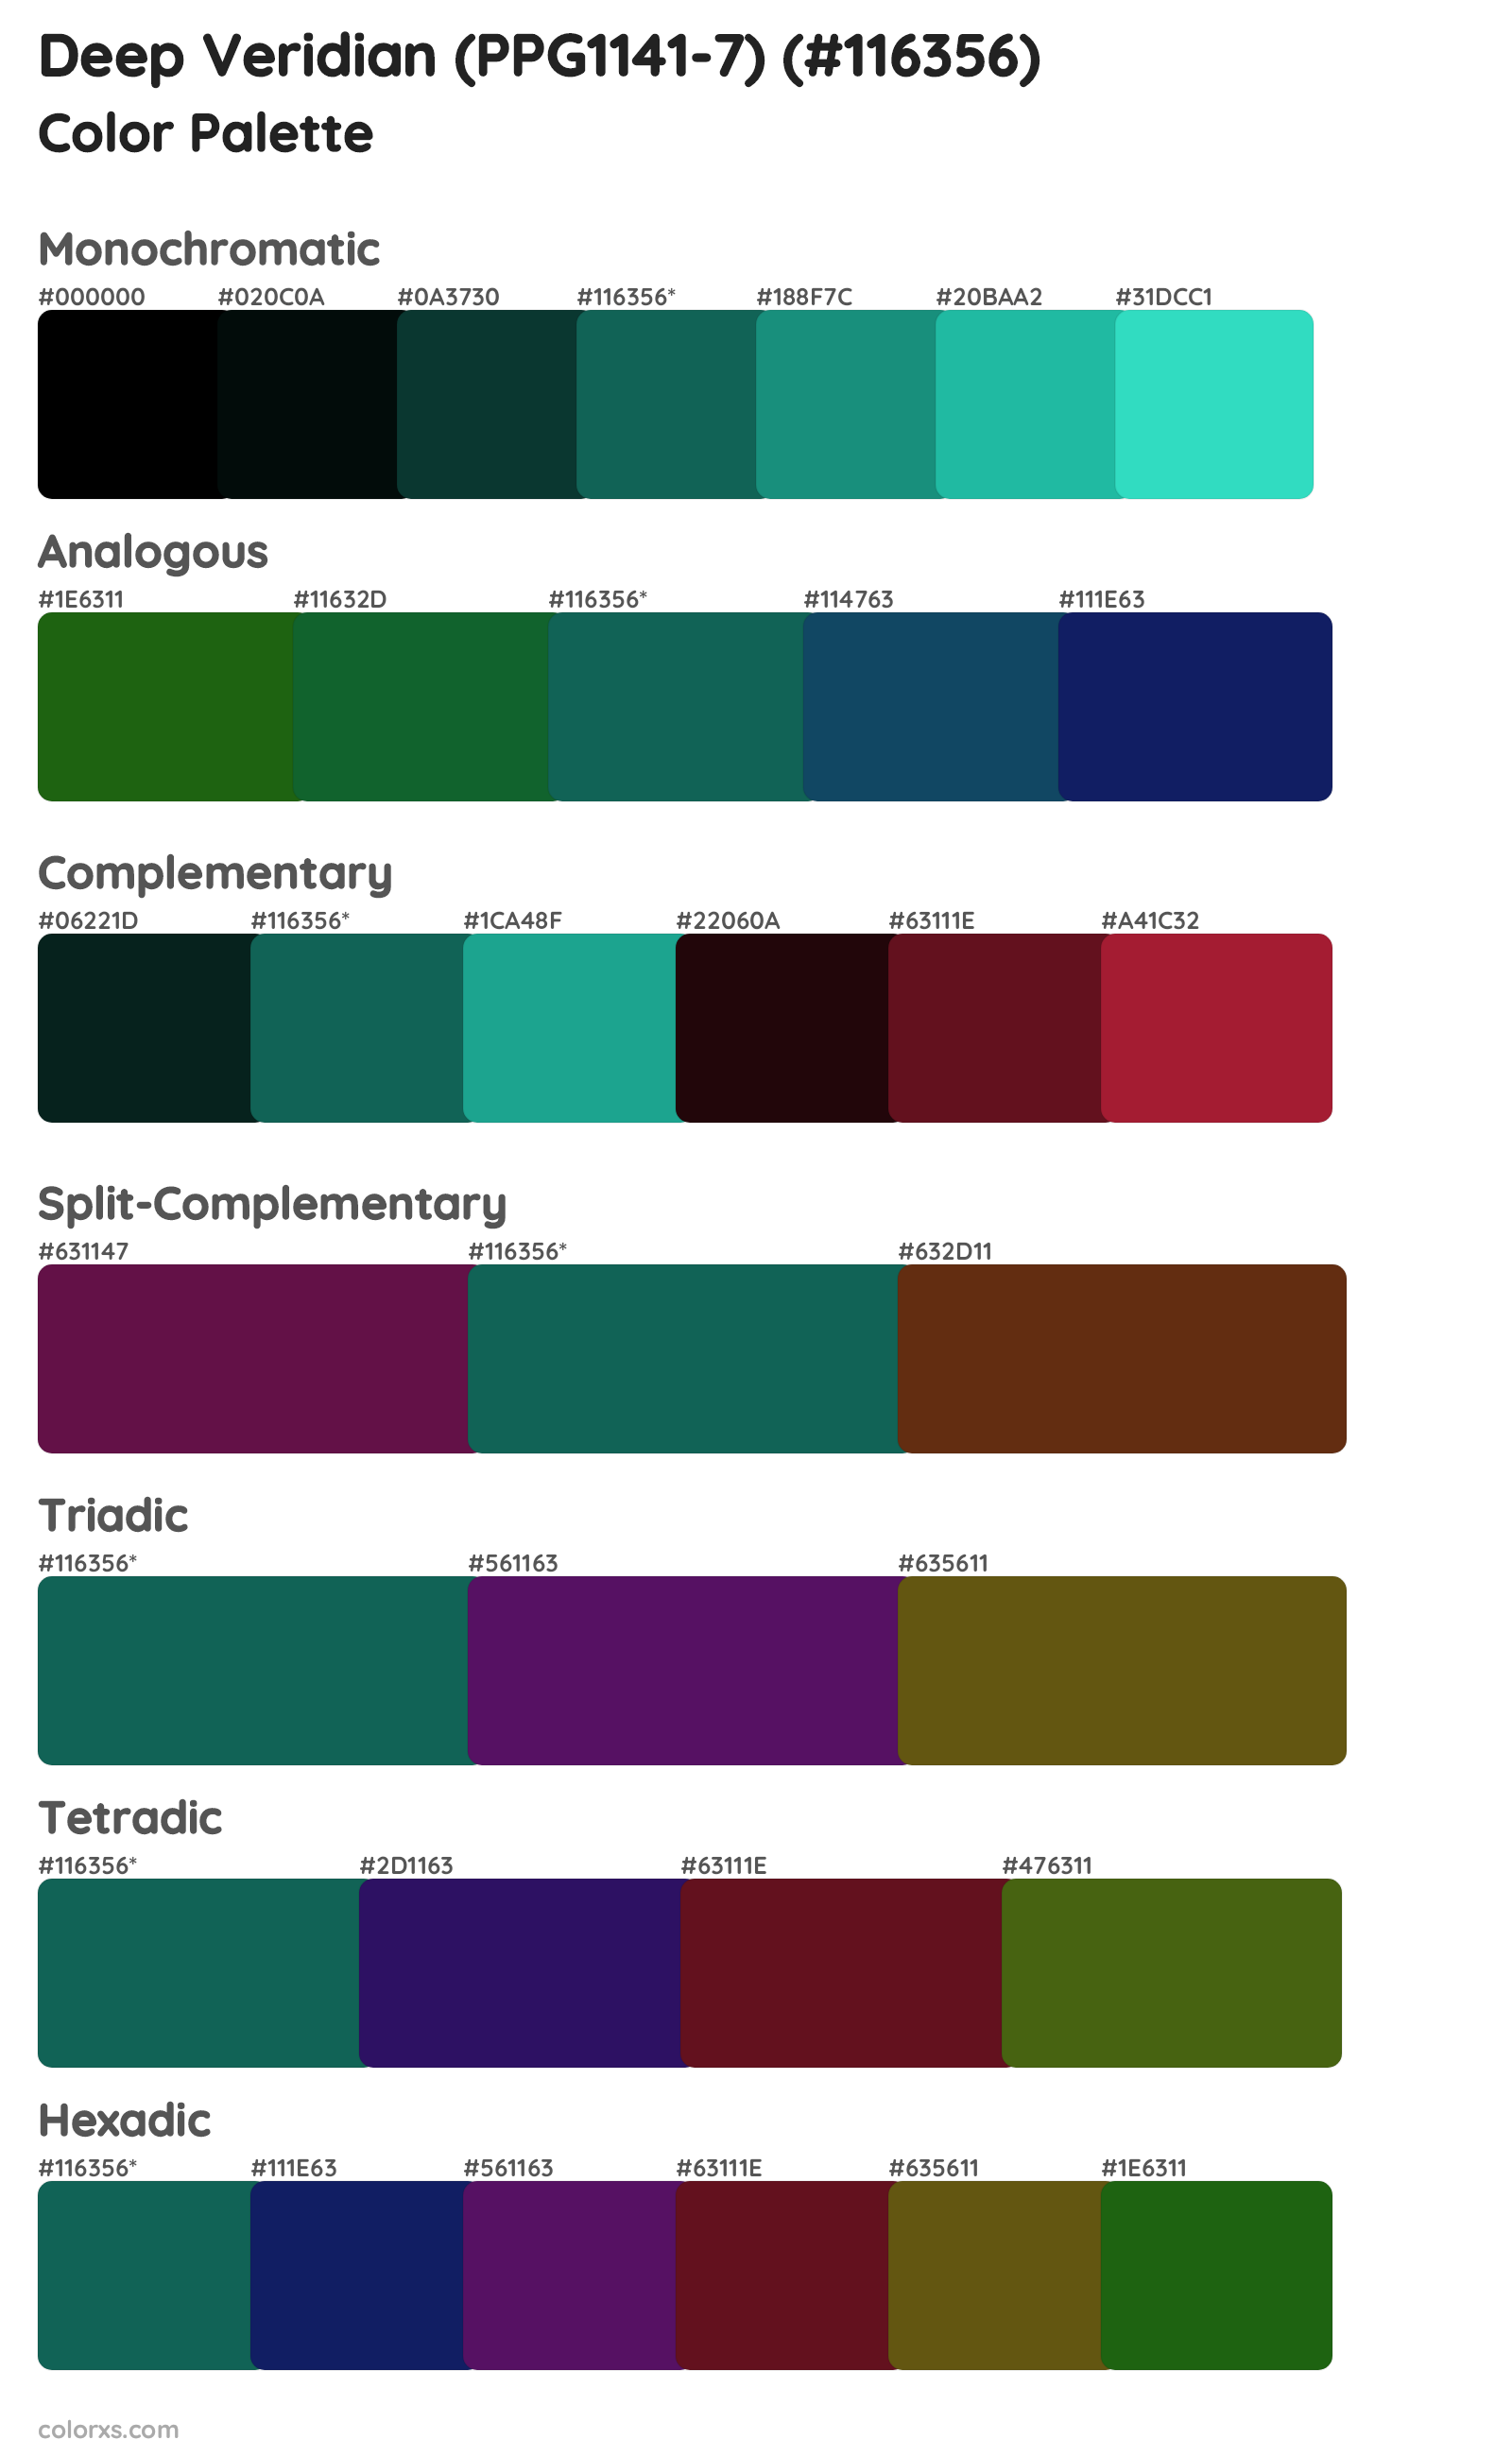 Deep Veridian (PPG1141-7) Color Scheme Palettes